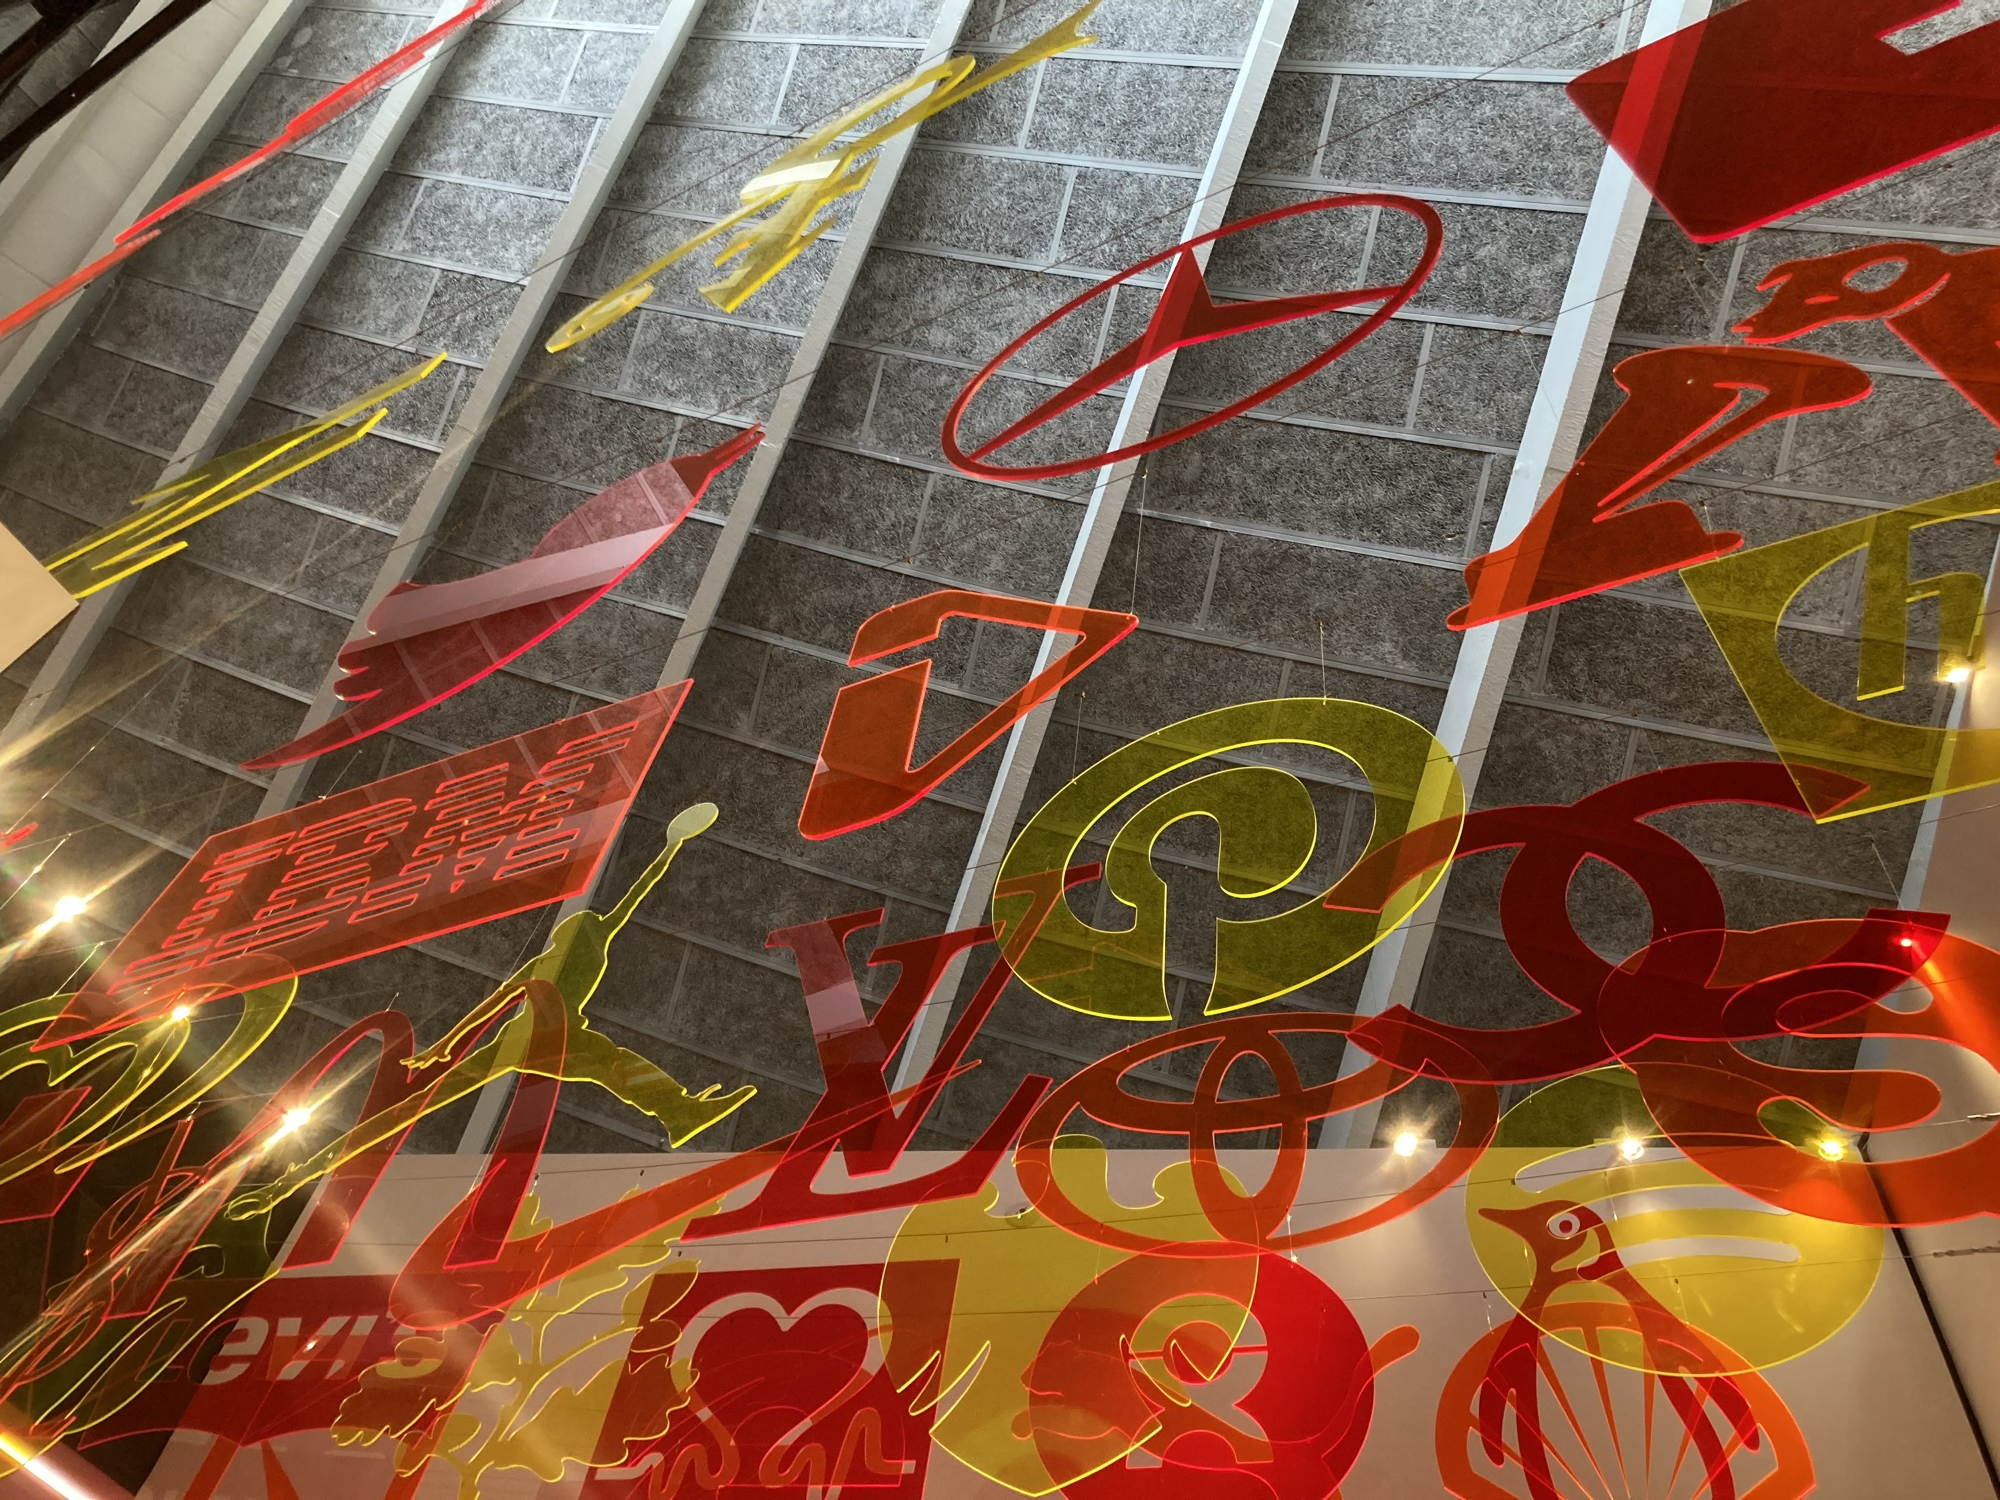 von der Decke hängen aus Plexiglasplatten (in den Farben gelb, rot, orange) ausgeschnittene Logos zB Twitter, Mercedes, Skype, IBM